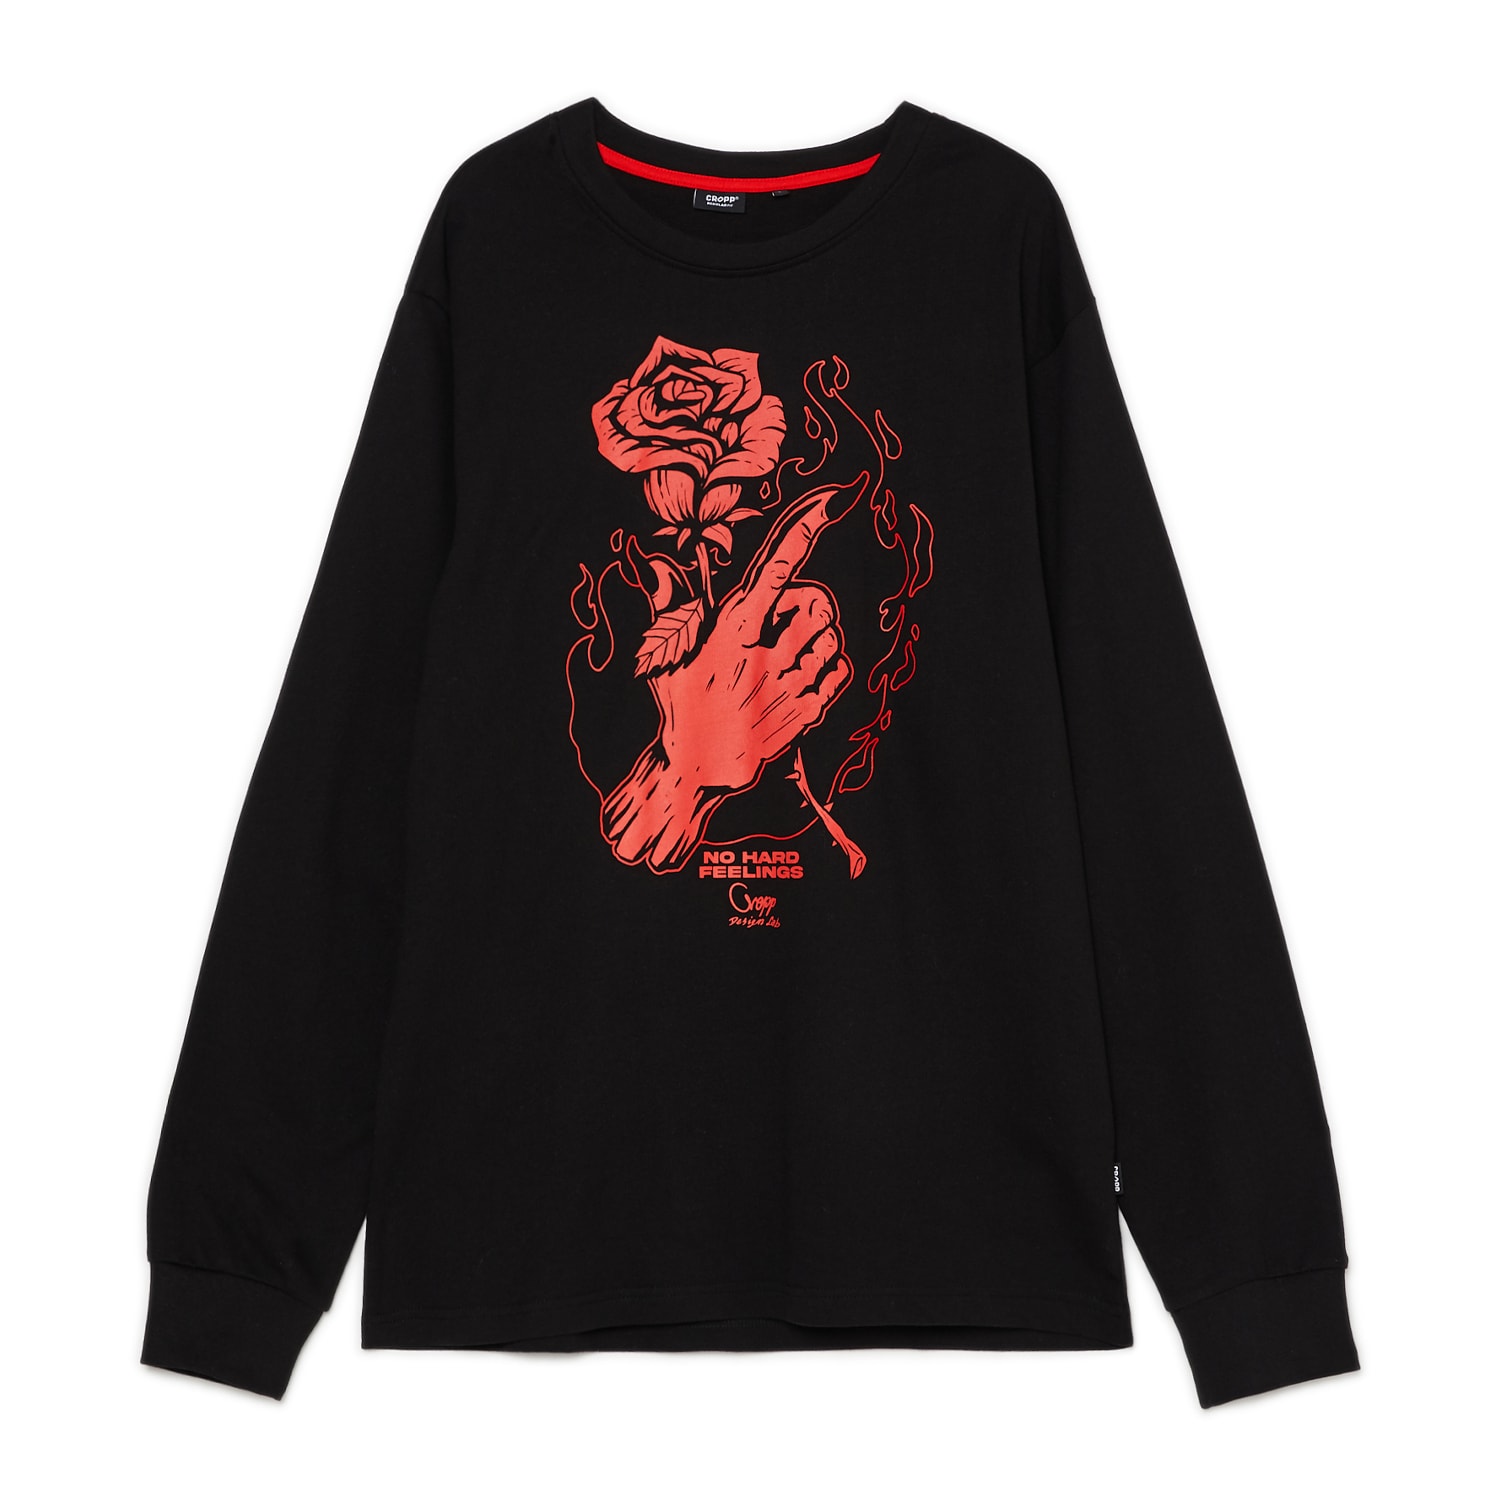 Cropp - Czarna koszulka longsleeve z motywem róży - Czarny